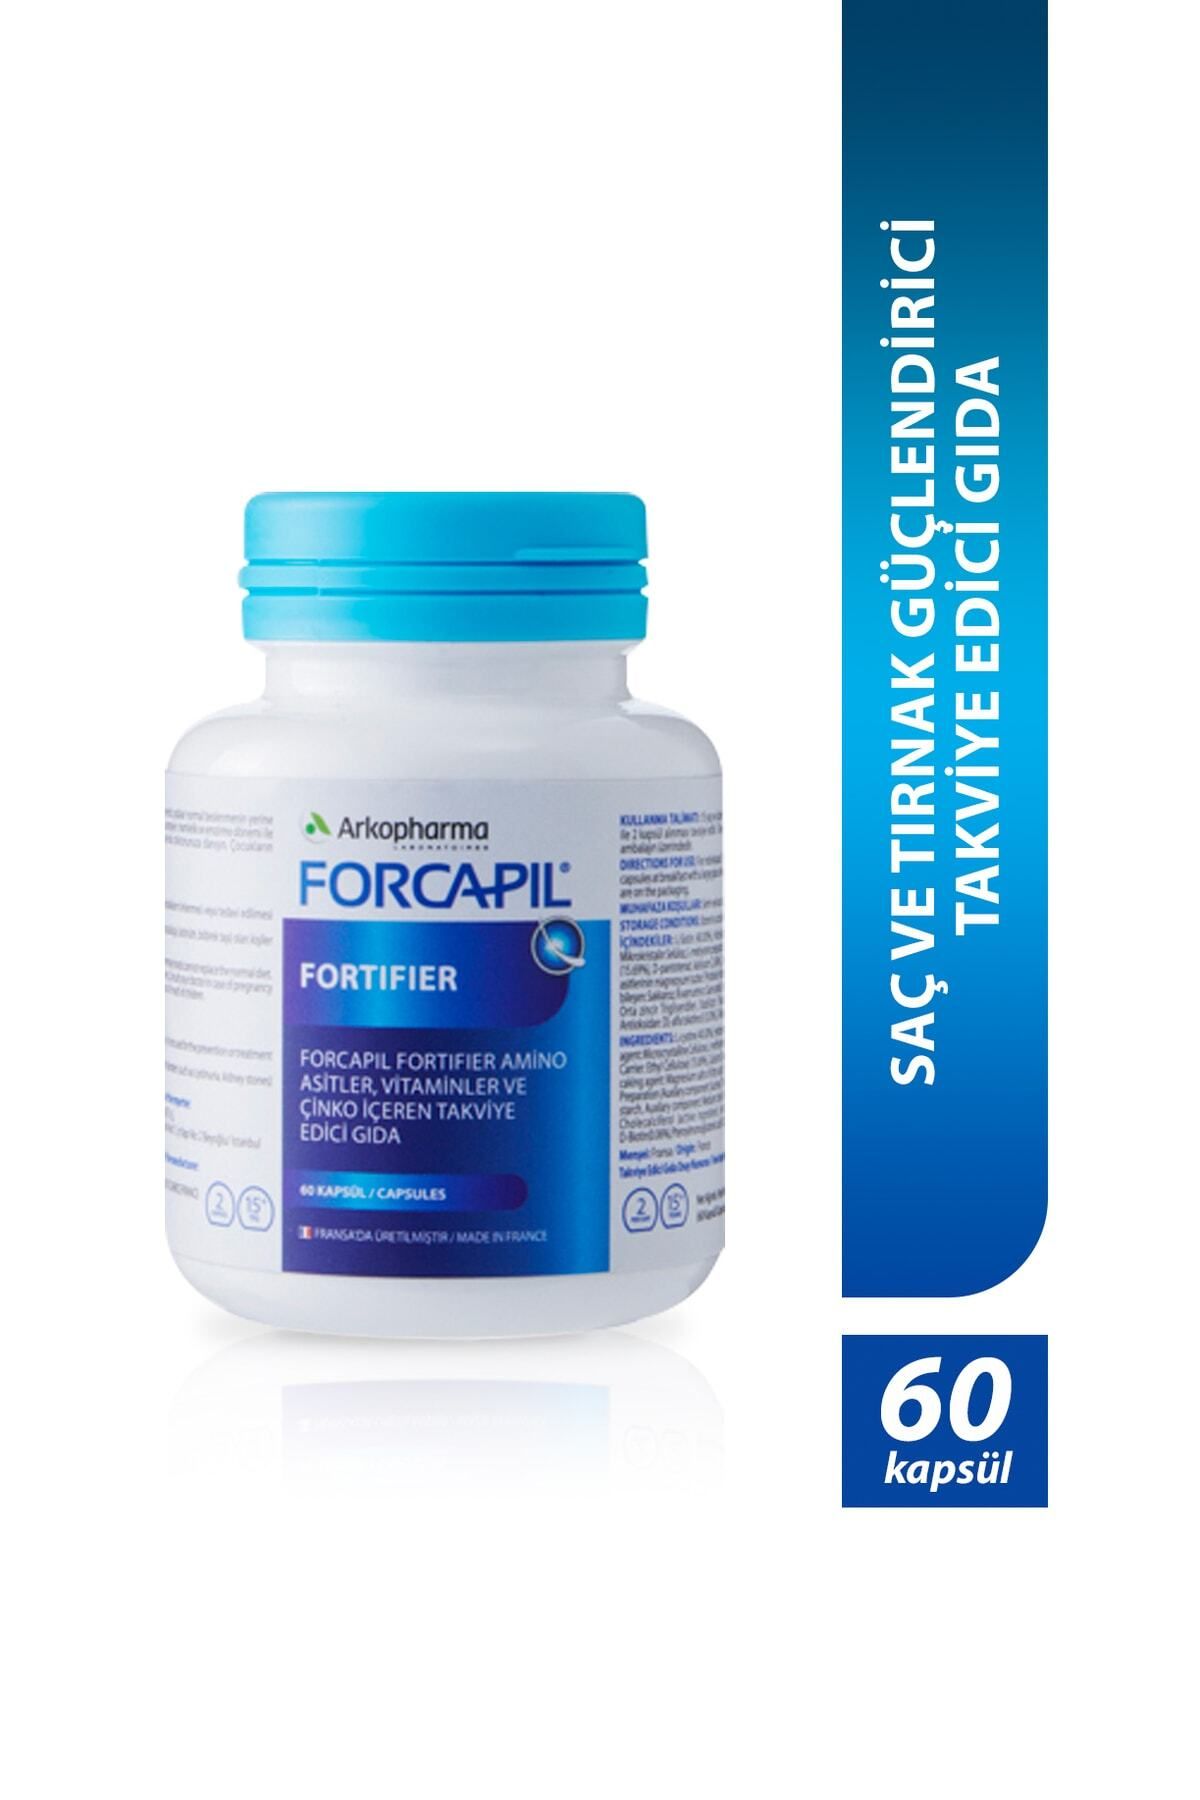 Arkopharma Forcapil® Fortifier – Saç Ve Tırnak Güçlendirici Takviye Edici Gıda 60 Kapsül